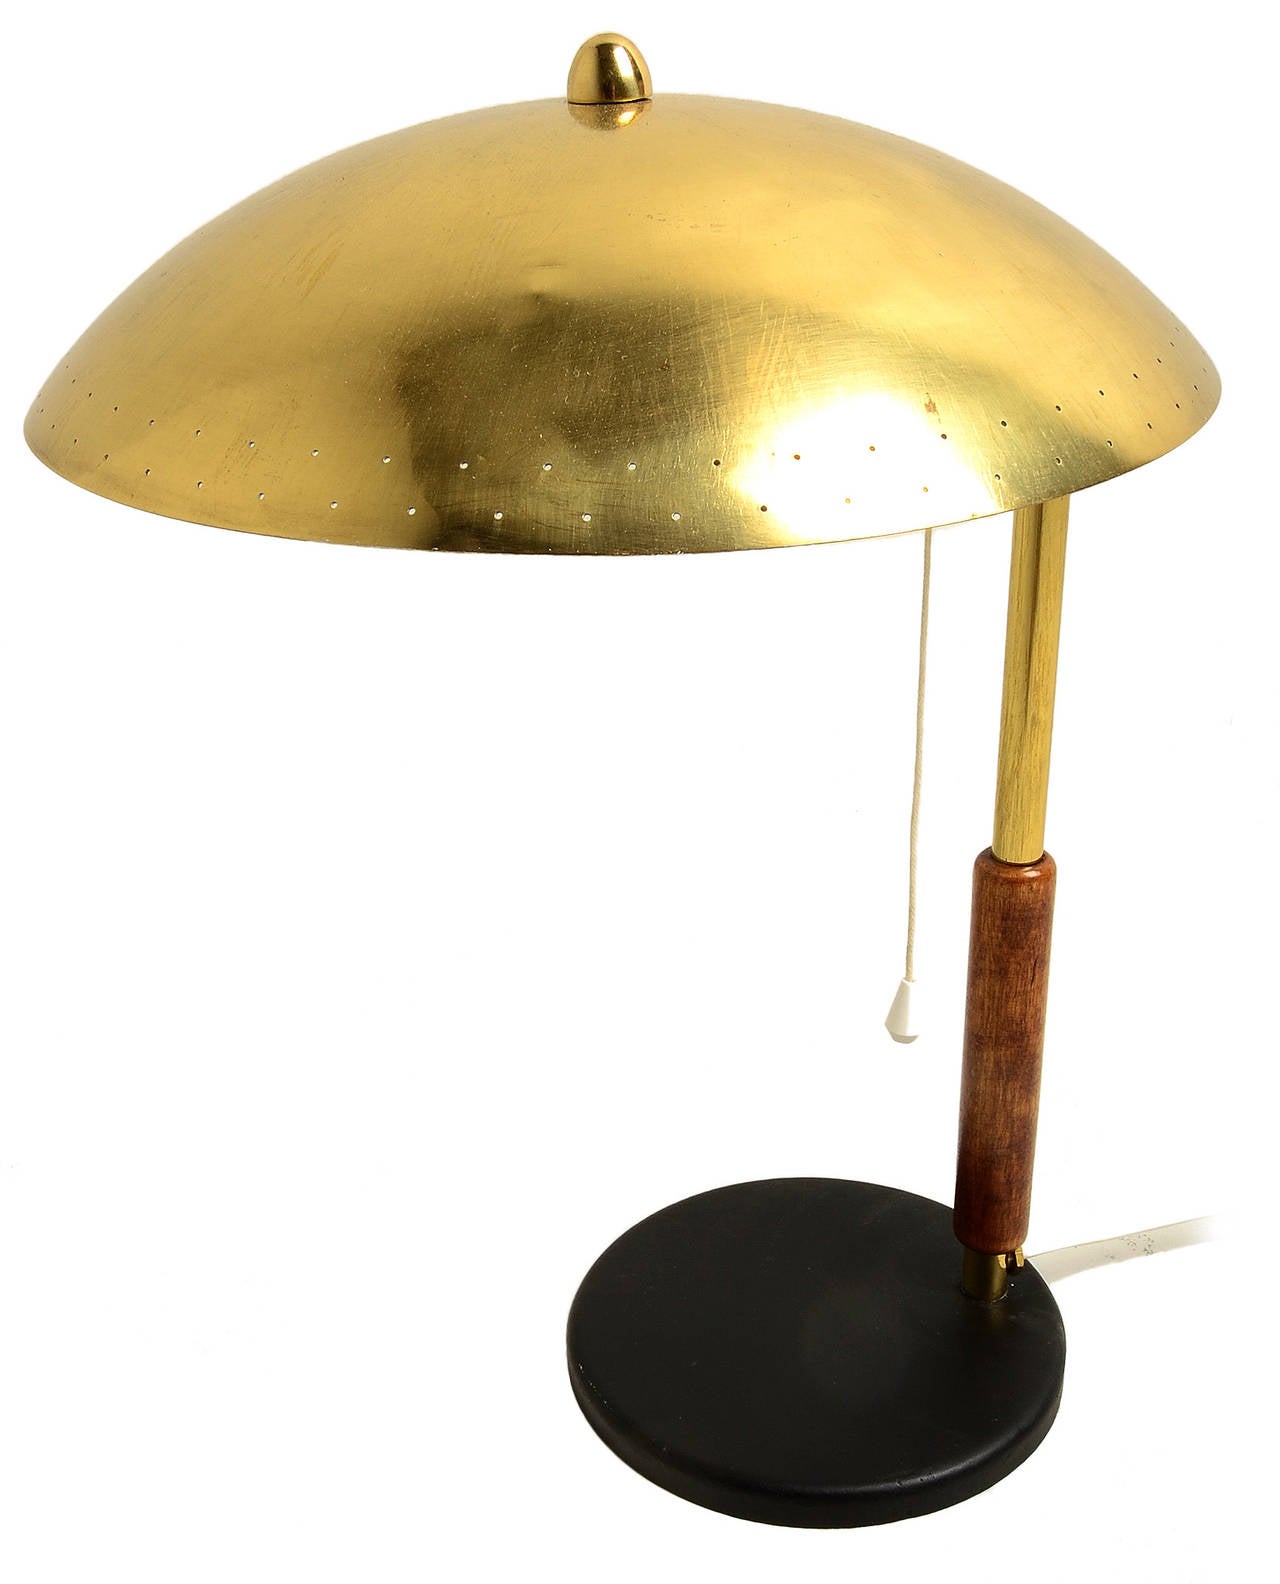 Une petite lampe de table sophistiquée par Paavo Tynell pour Taito Oy, vers 1950.
Un superbe exemple des œuvres classiques de Tynell en laiton ombragé.